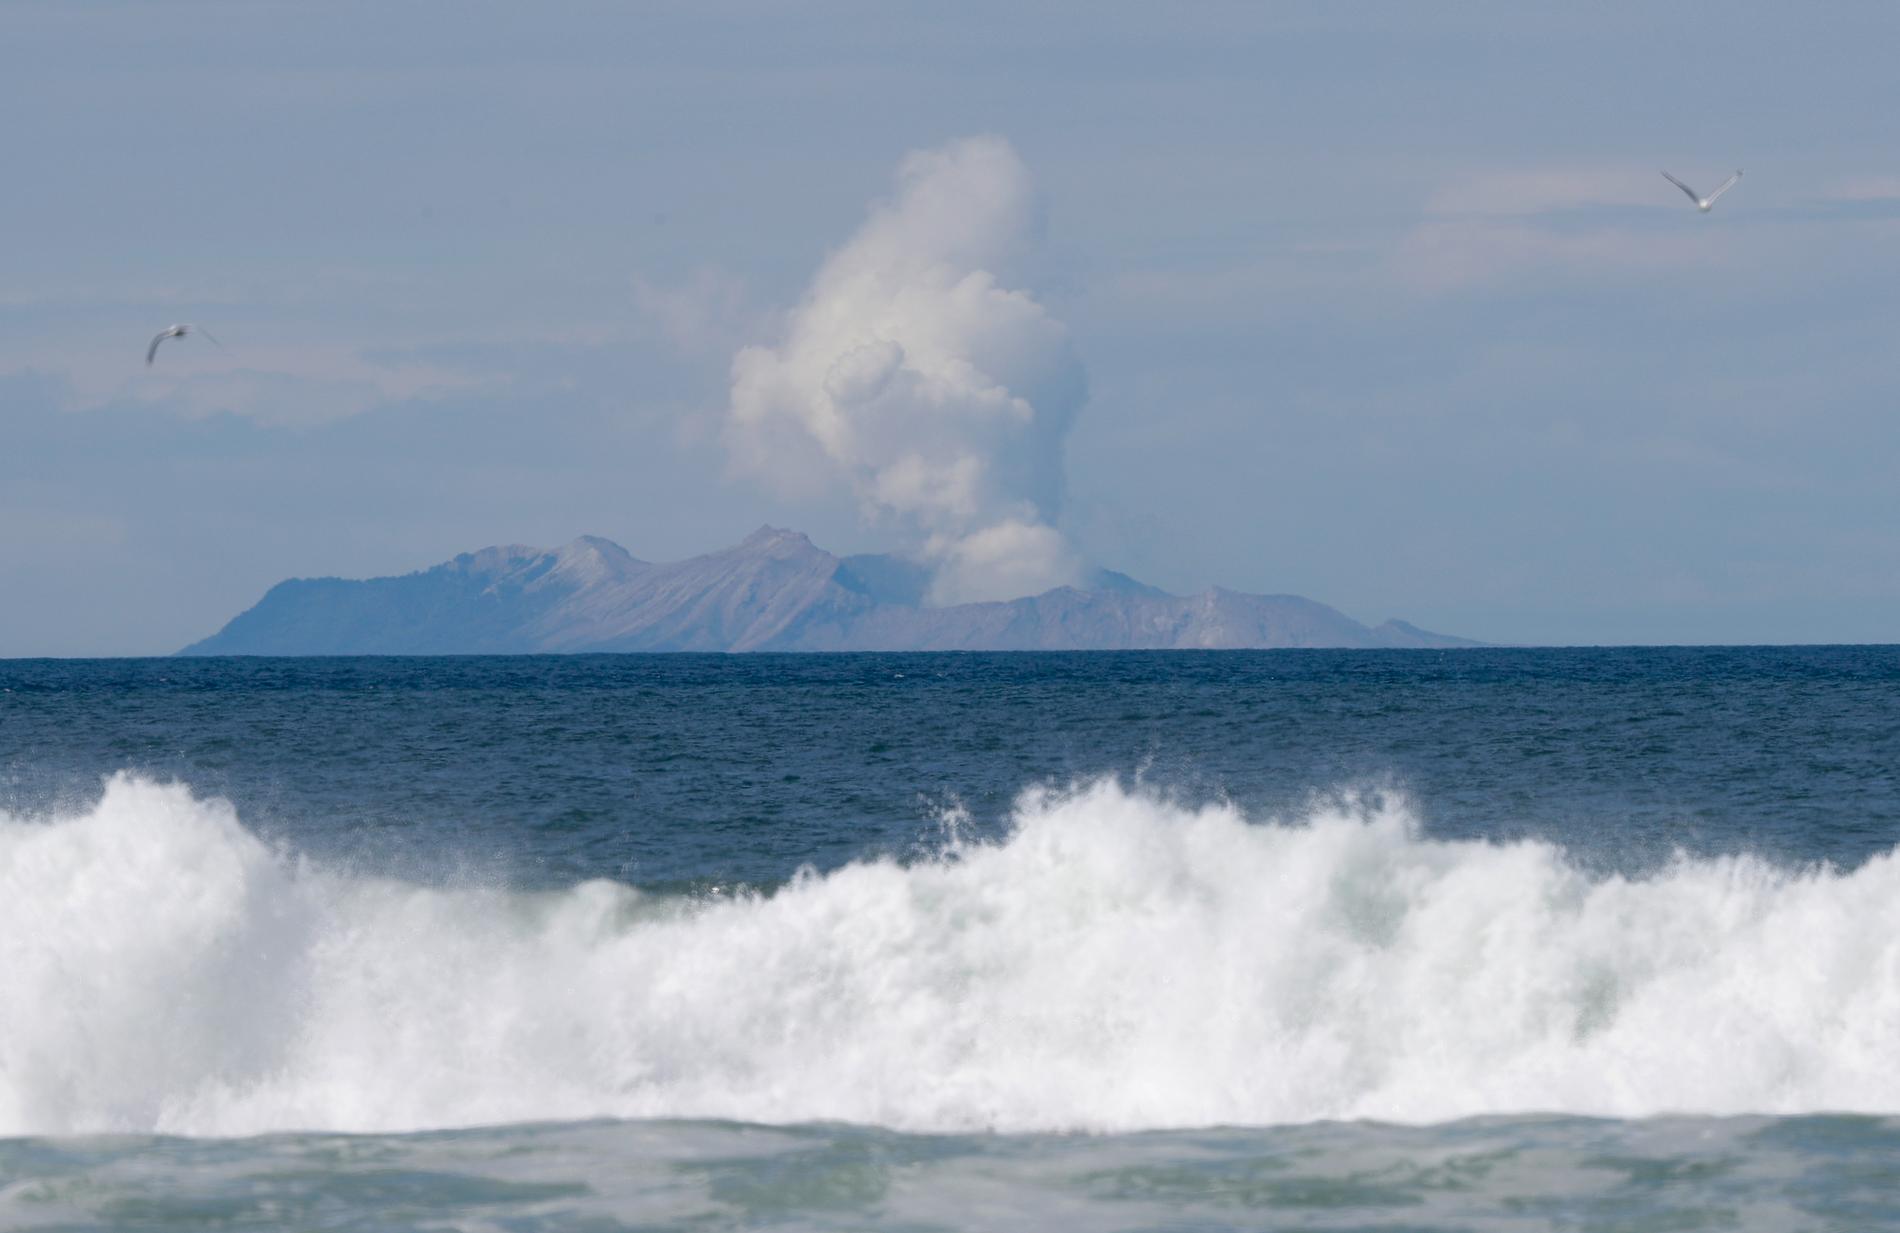 Rök stiger upp från vulkanön White Island i Nya Zeeland, några dagar efter det ödesdigra utbrottet i december 2019.